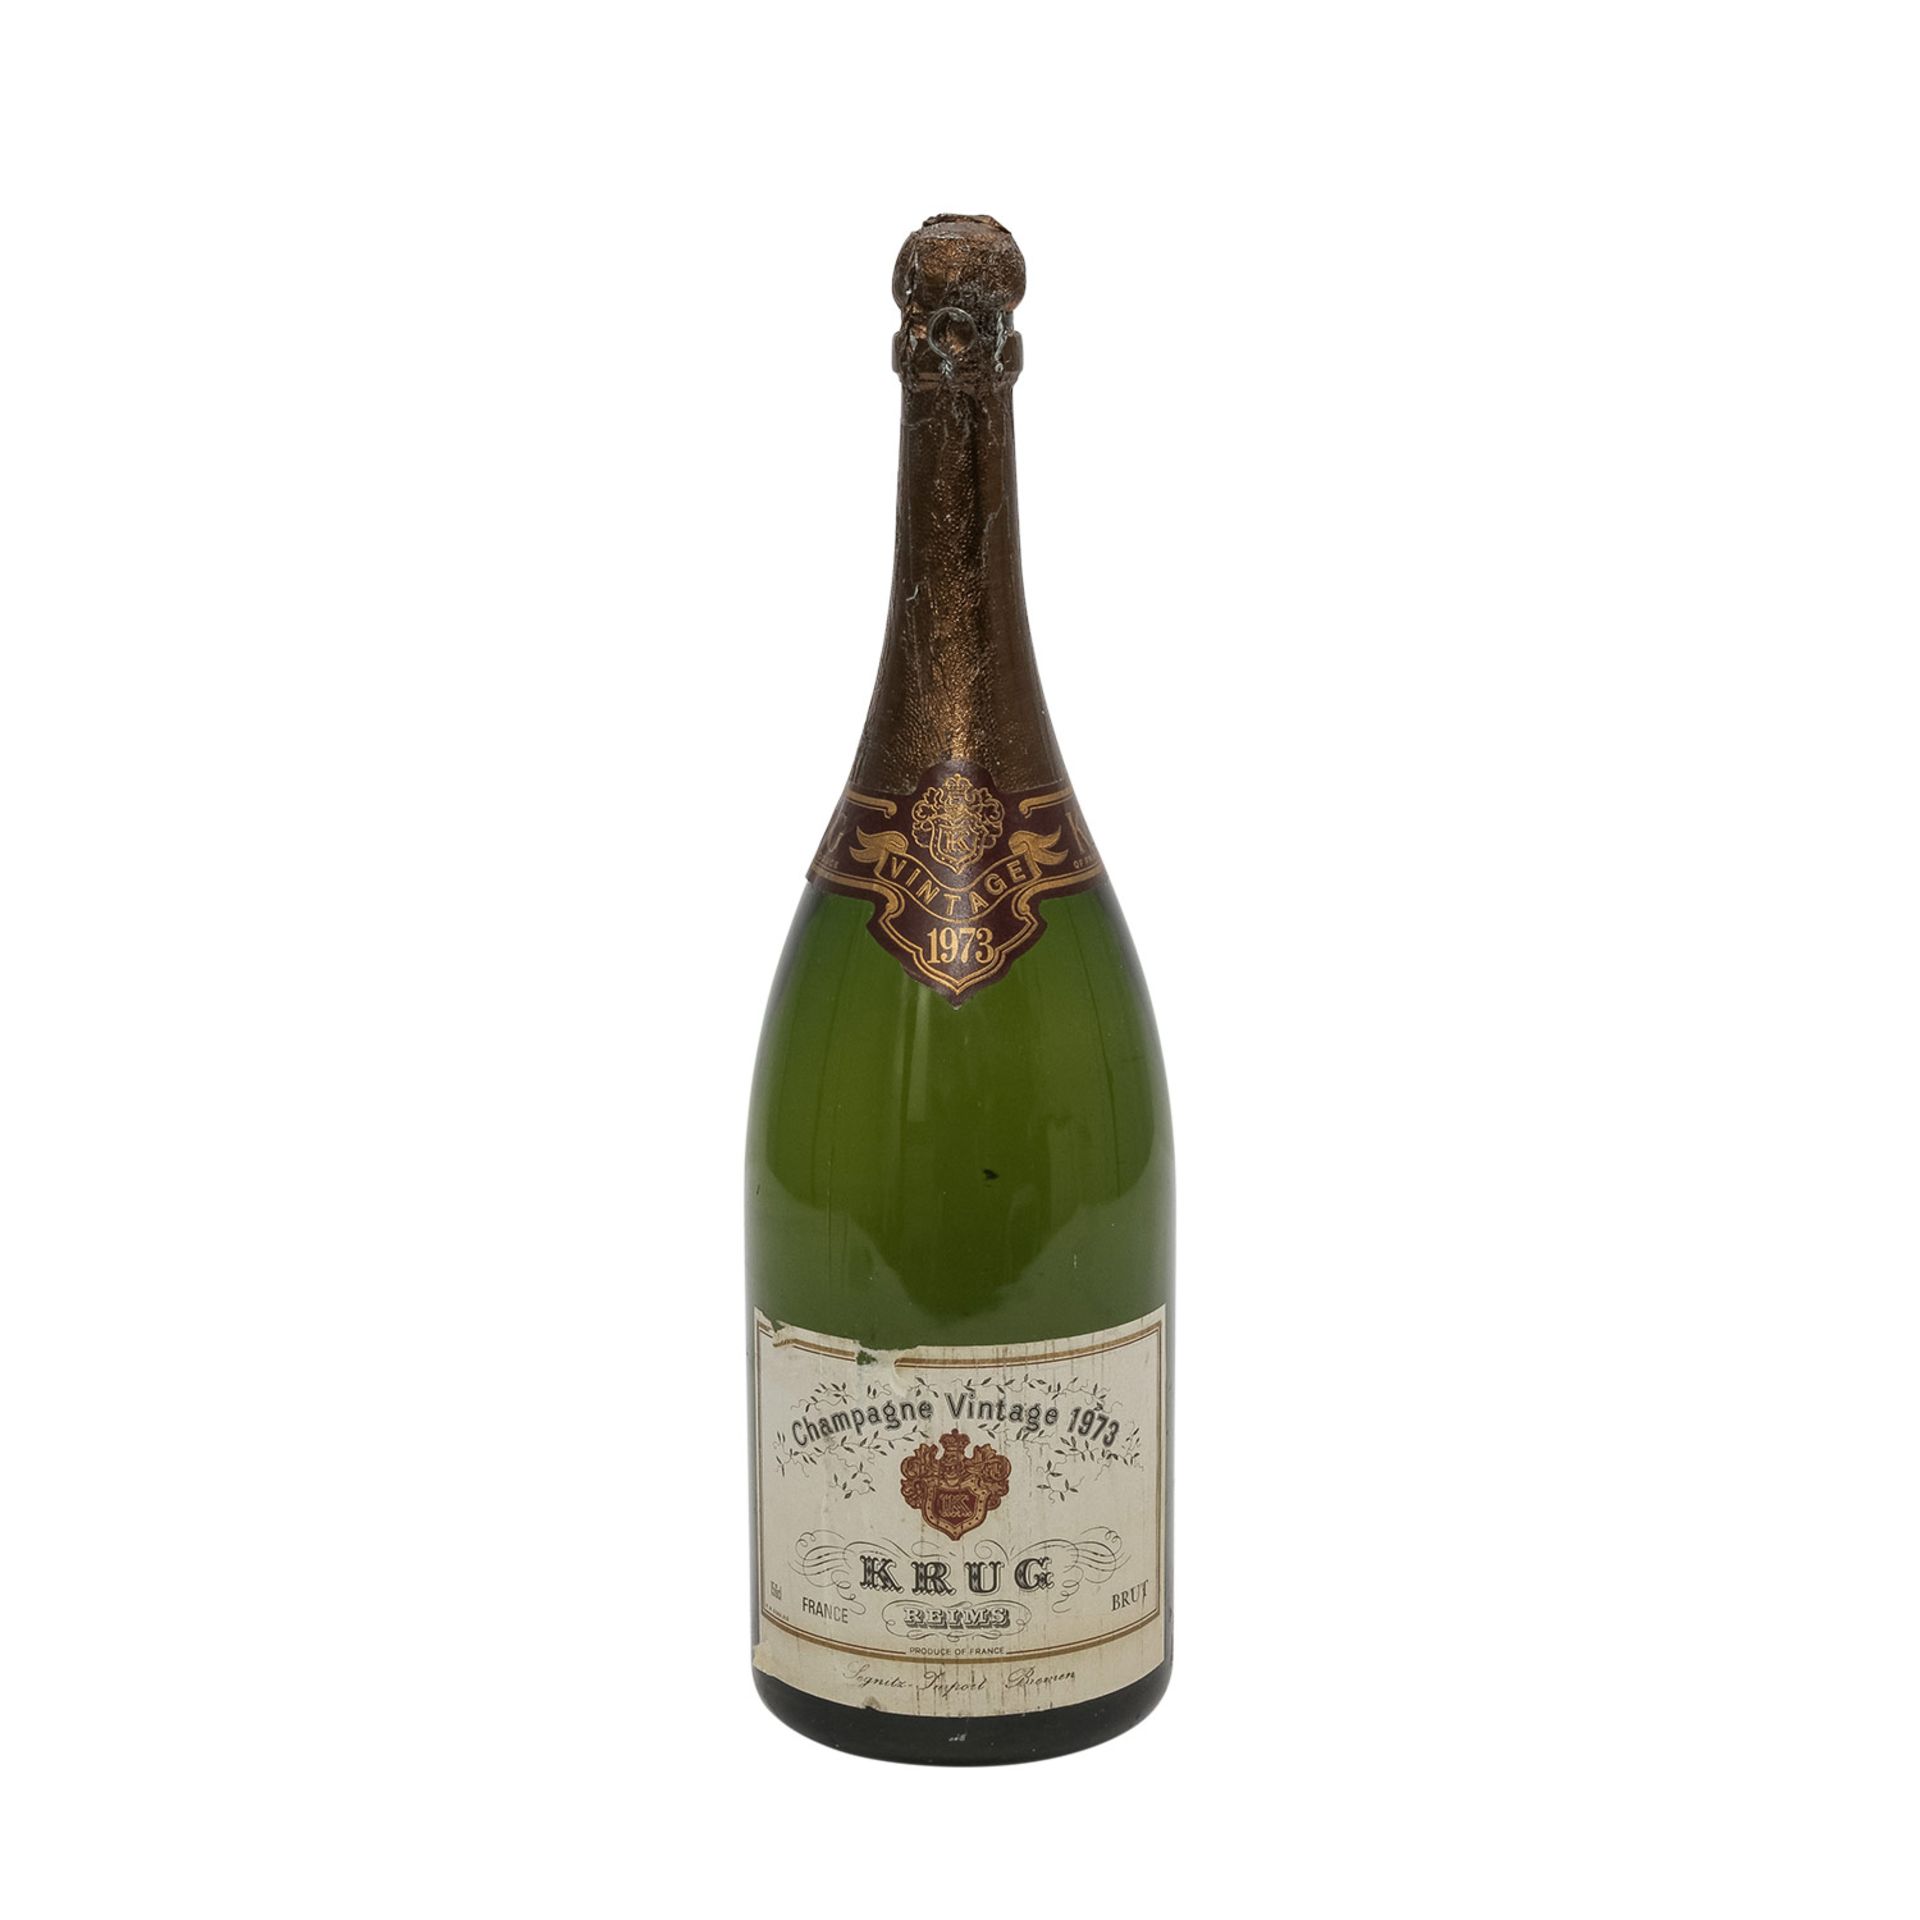 KRUG Champagne Brut, Magnumflasche, Vintage 1973Reims, Frankreich, Rebsorte: Champagne Blend, 12,